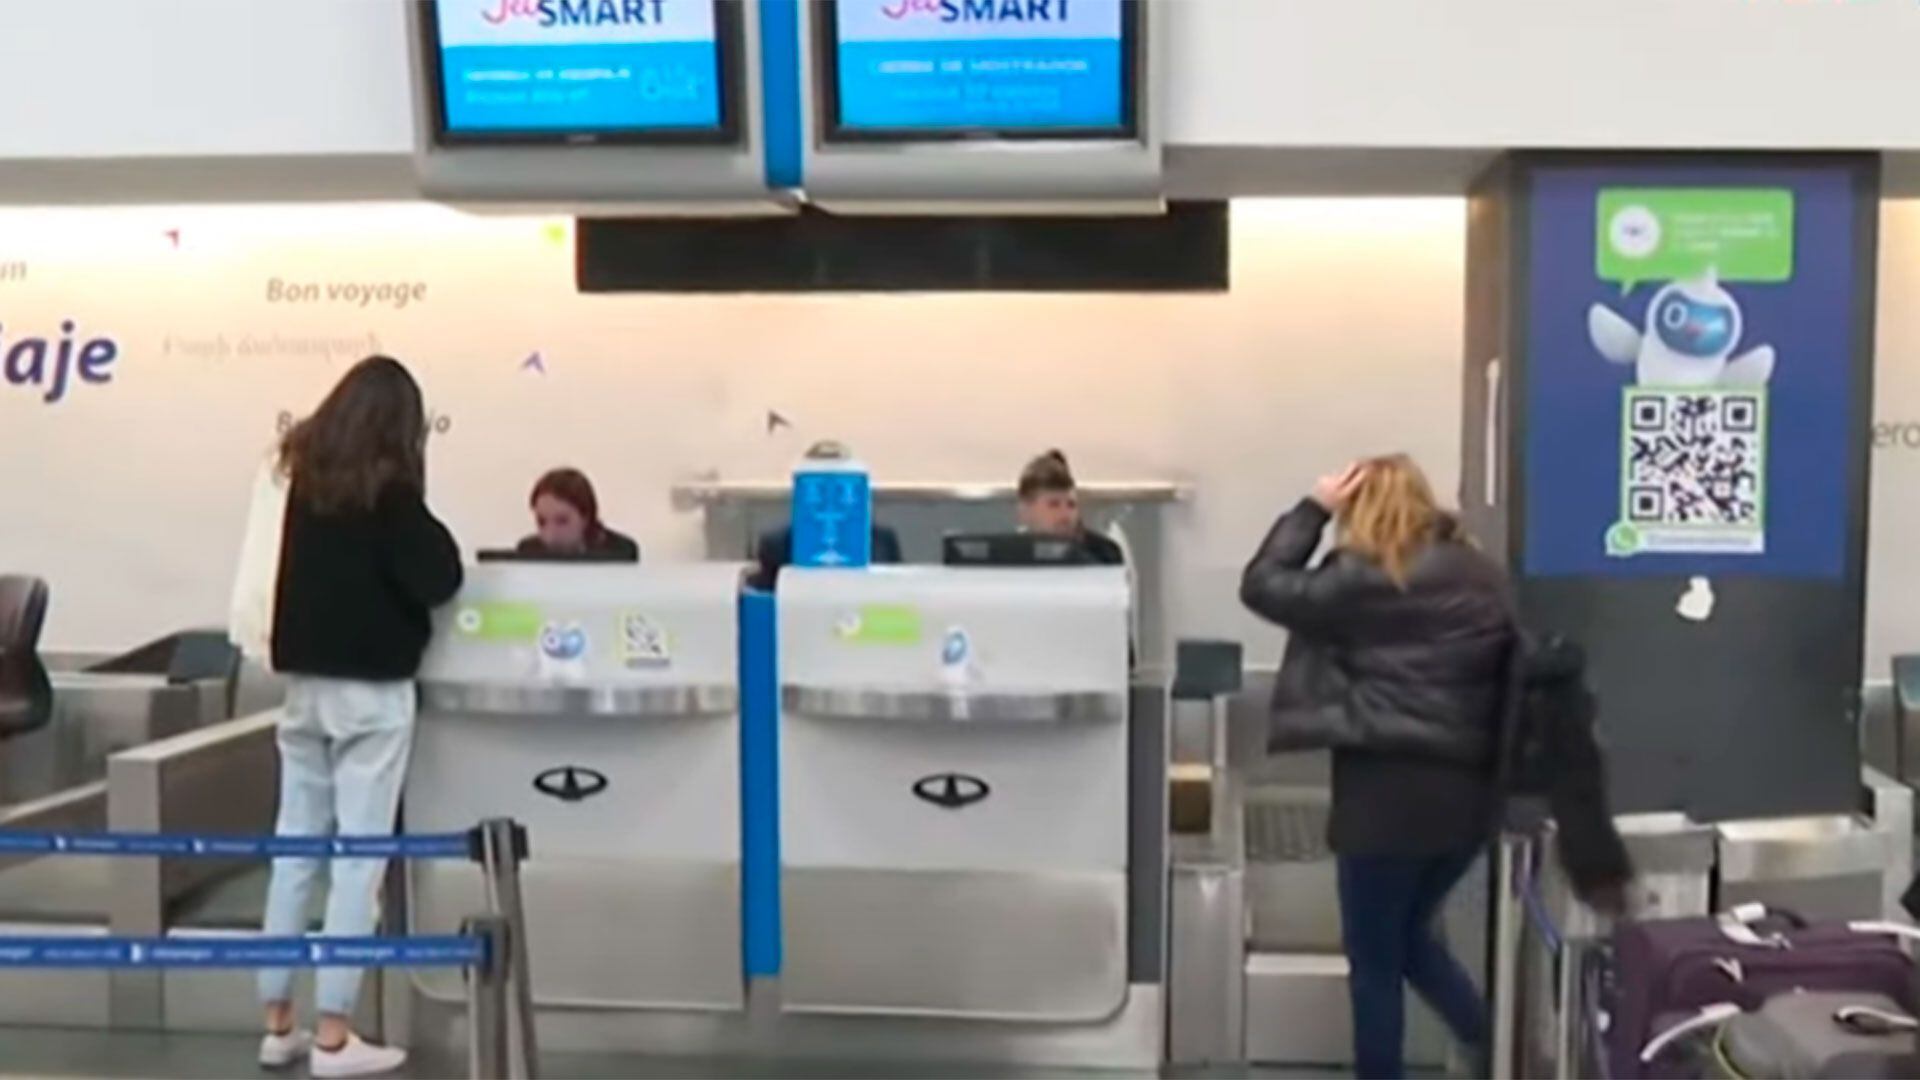 Pasajeros de JetSmart se acercan a los mostradores del check-in para obtener información sobre sus vuelos.